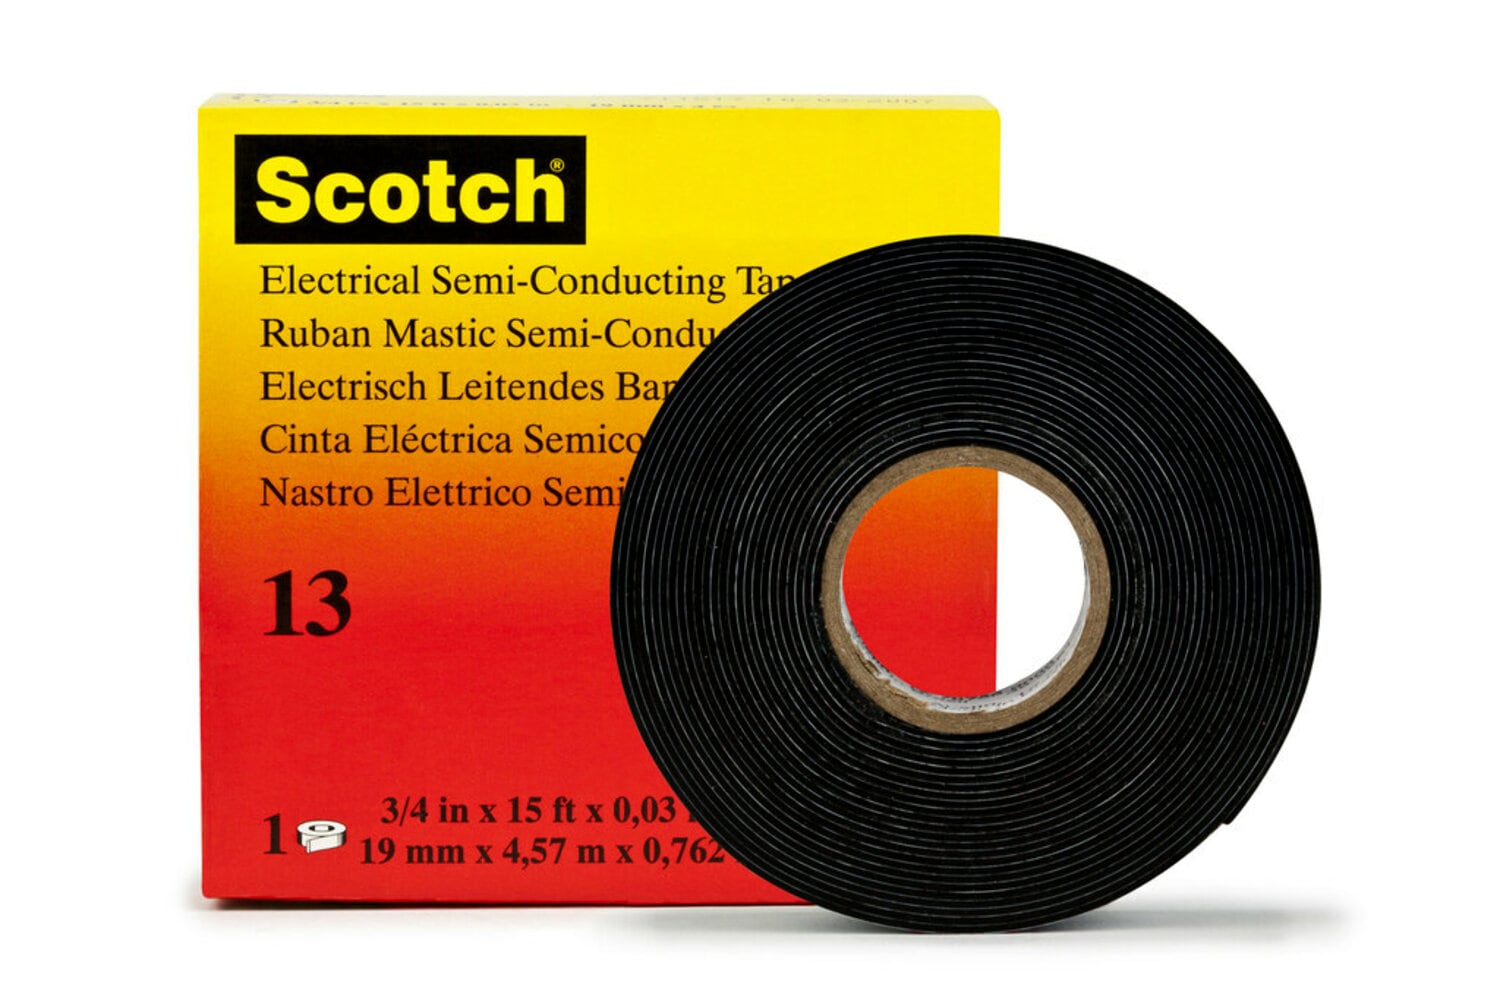 7010353829 - Scotch Electrical Semi-Conducting Tape 13, 3/4 in x 10 ft, Printed,
Black, 250 rolls/Case, BULK